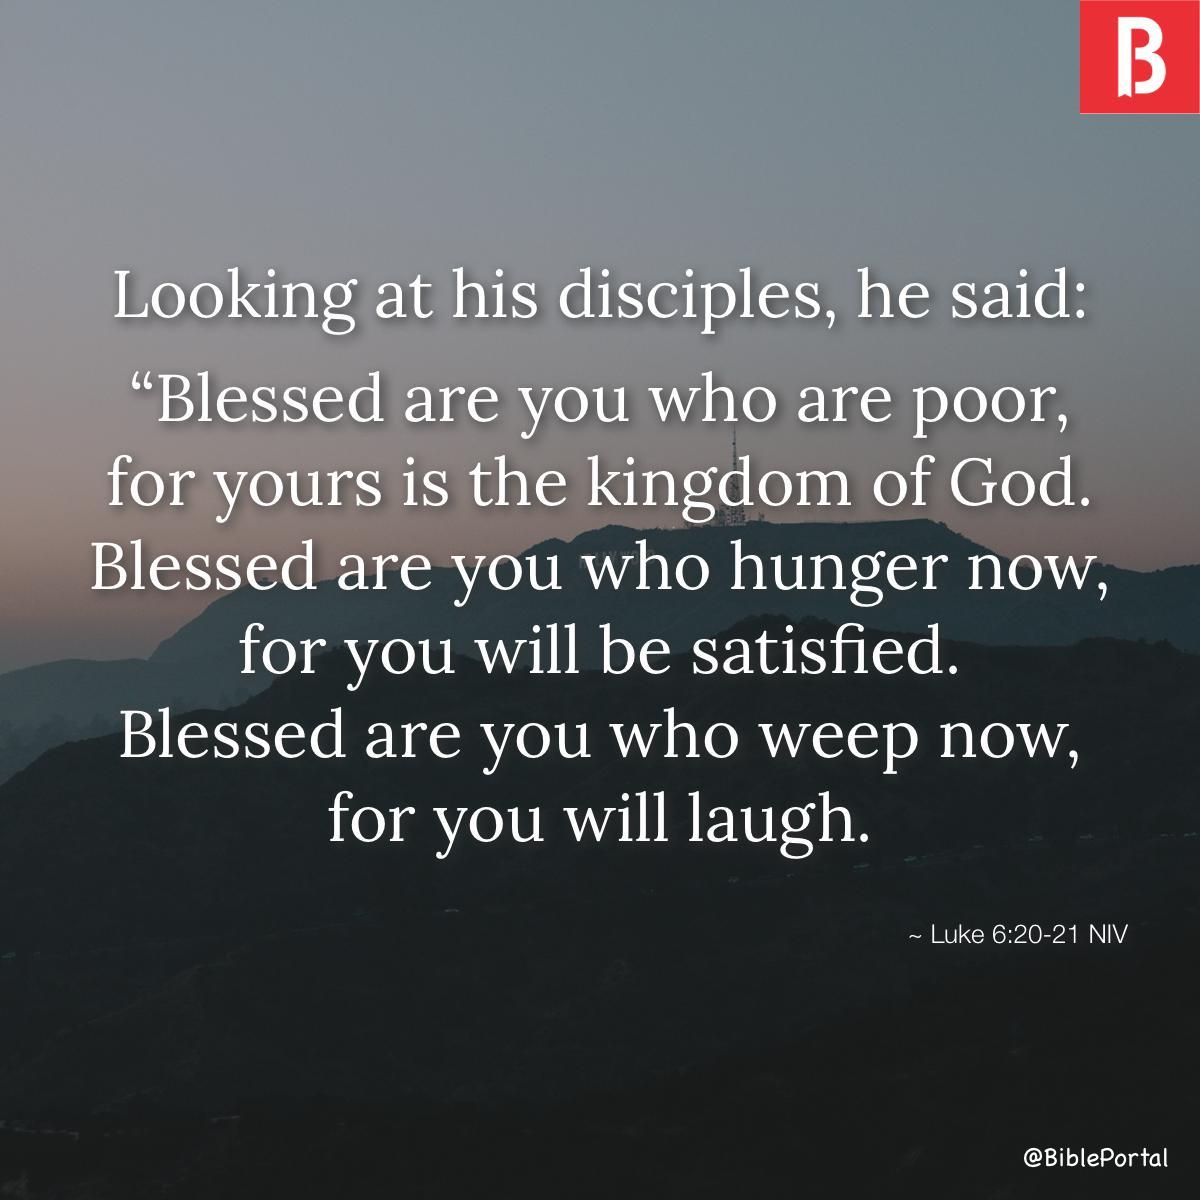 Luke 6:20-21